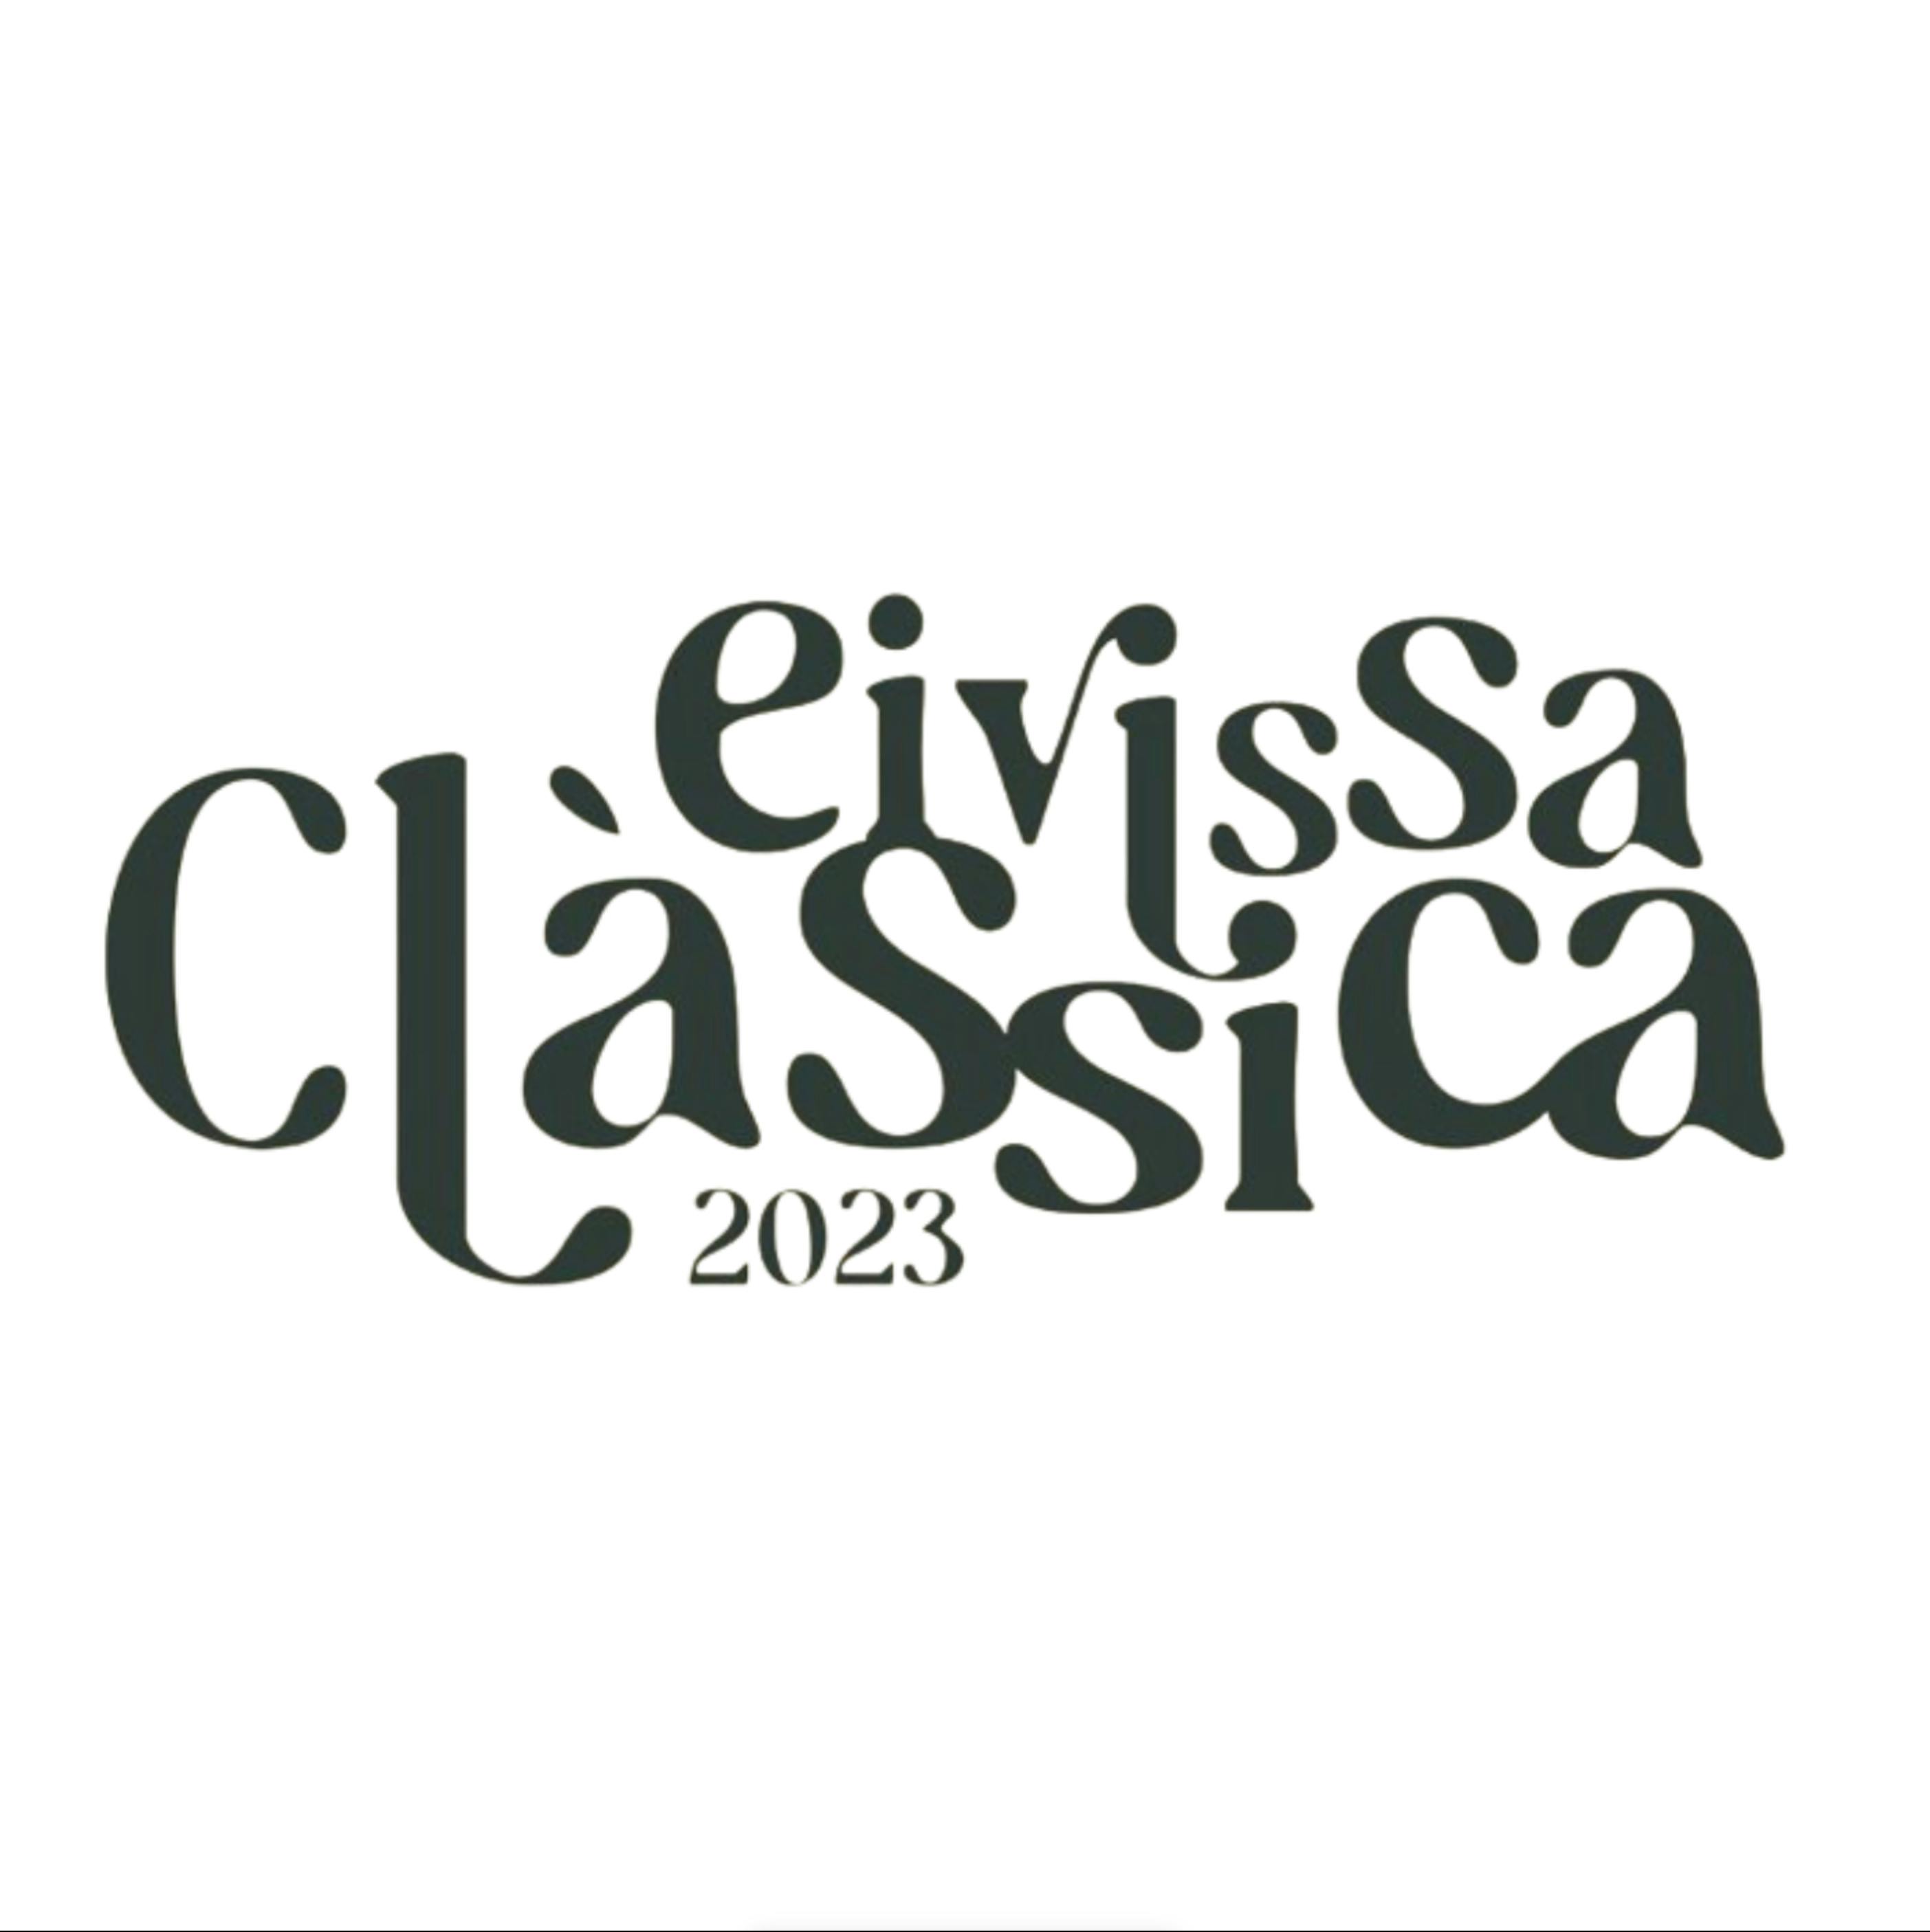 Eivissa Clàssica